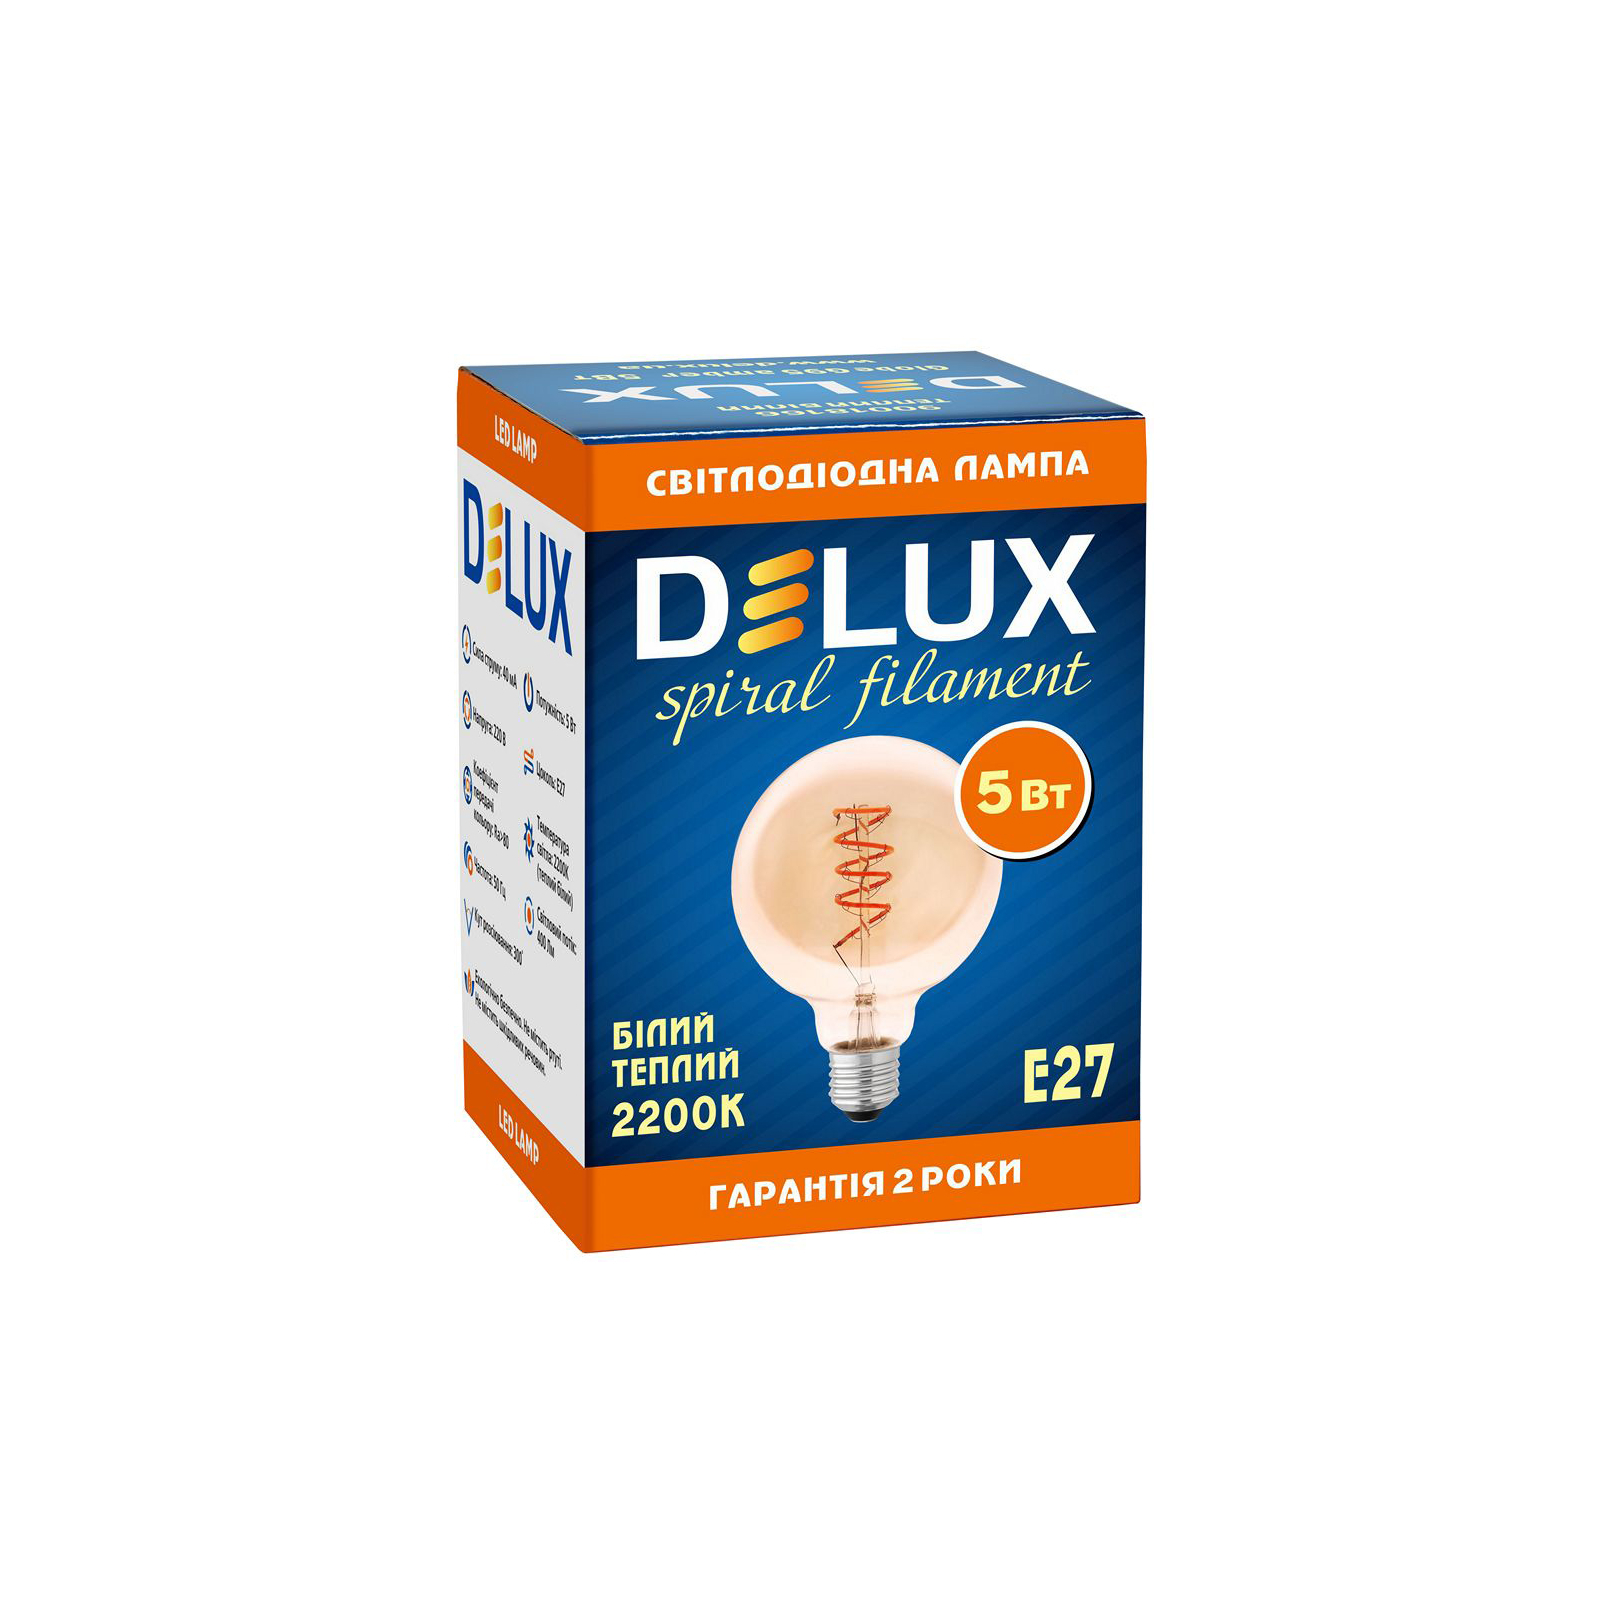 Лампочка Delux Globe G95 5Вт E27 2200К amber spiral filament (90018166) изображение 3